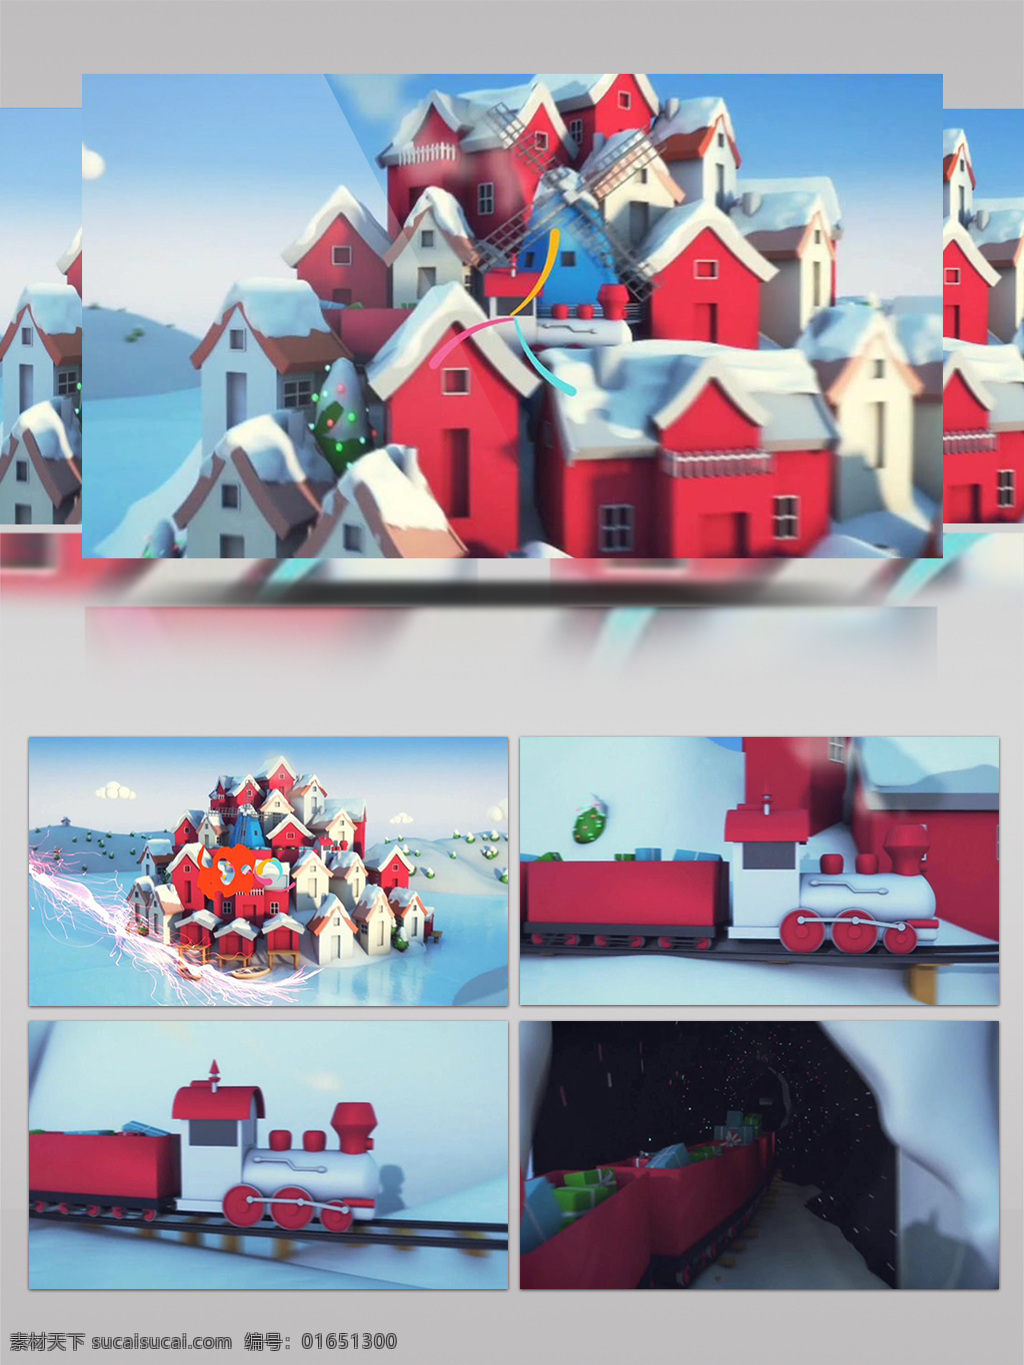 圣诞节 礼物 袭 视频 片头 ae 模板 演绎 节日 祝福 圣诞嘉年华 圣诞主题 圣诞节片头 红色城堡 儿童礼物 活动